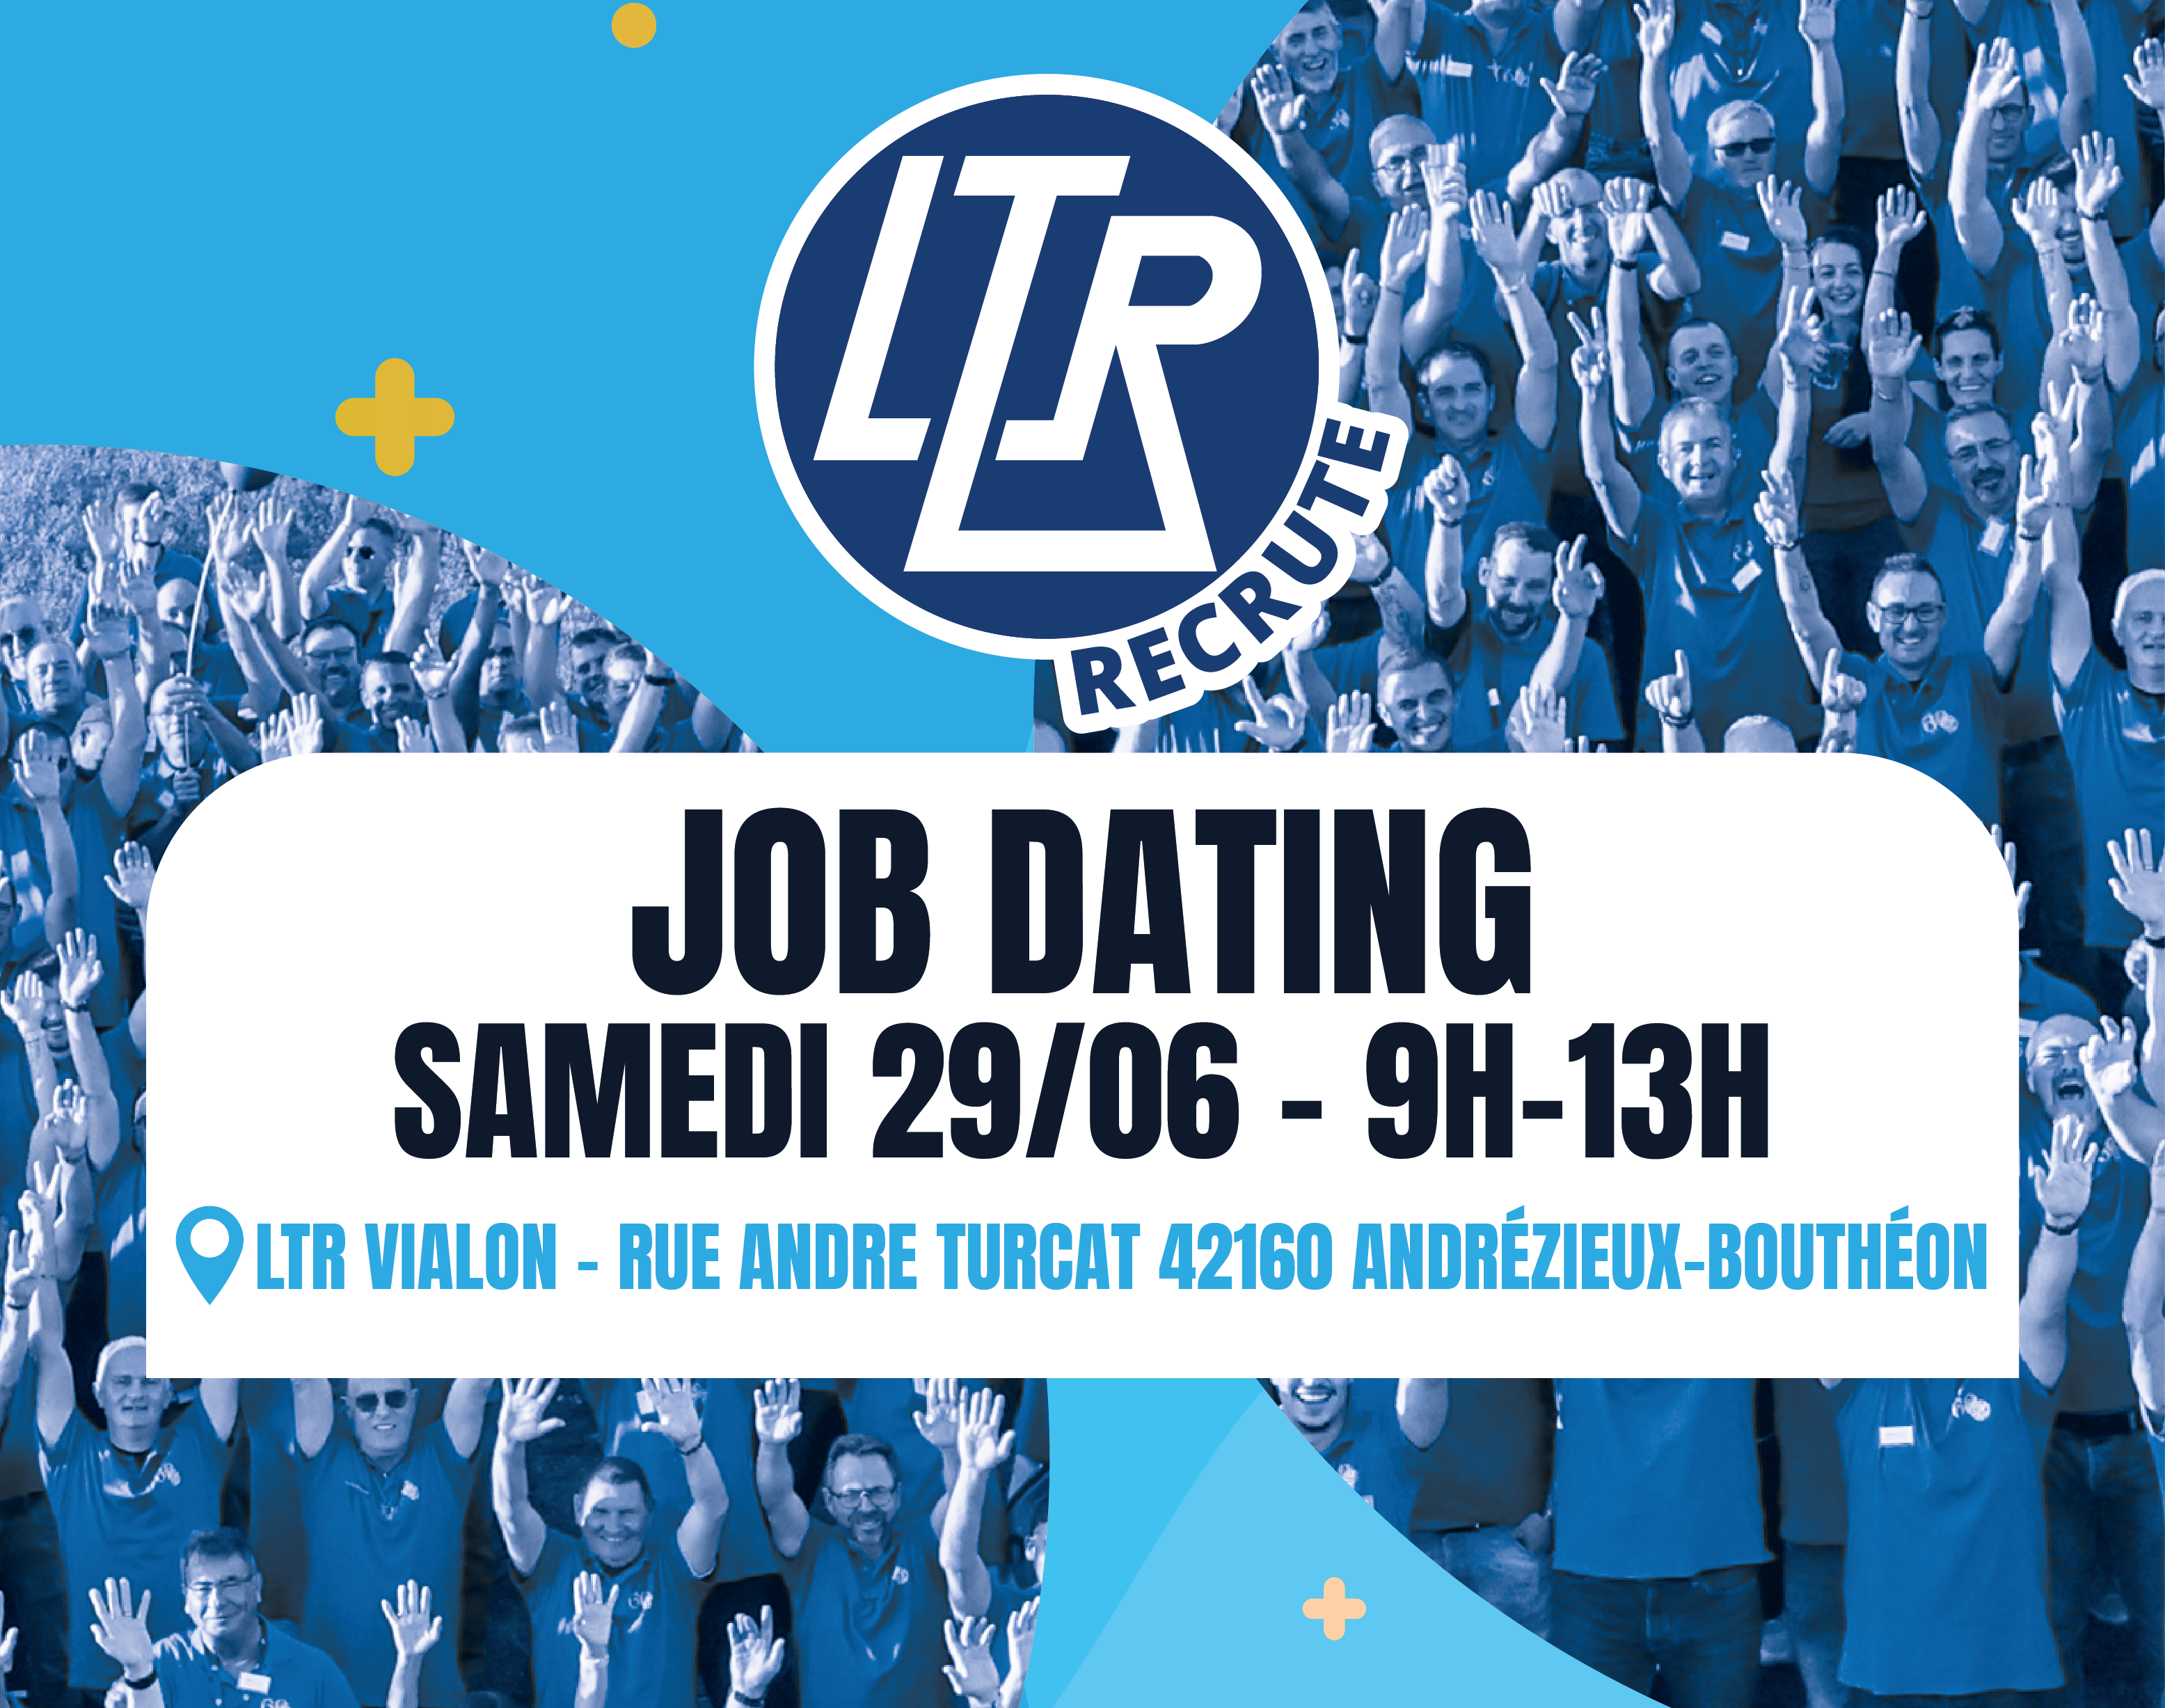 Job dating – Samedi 29/06